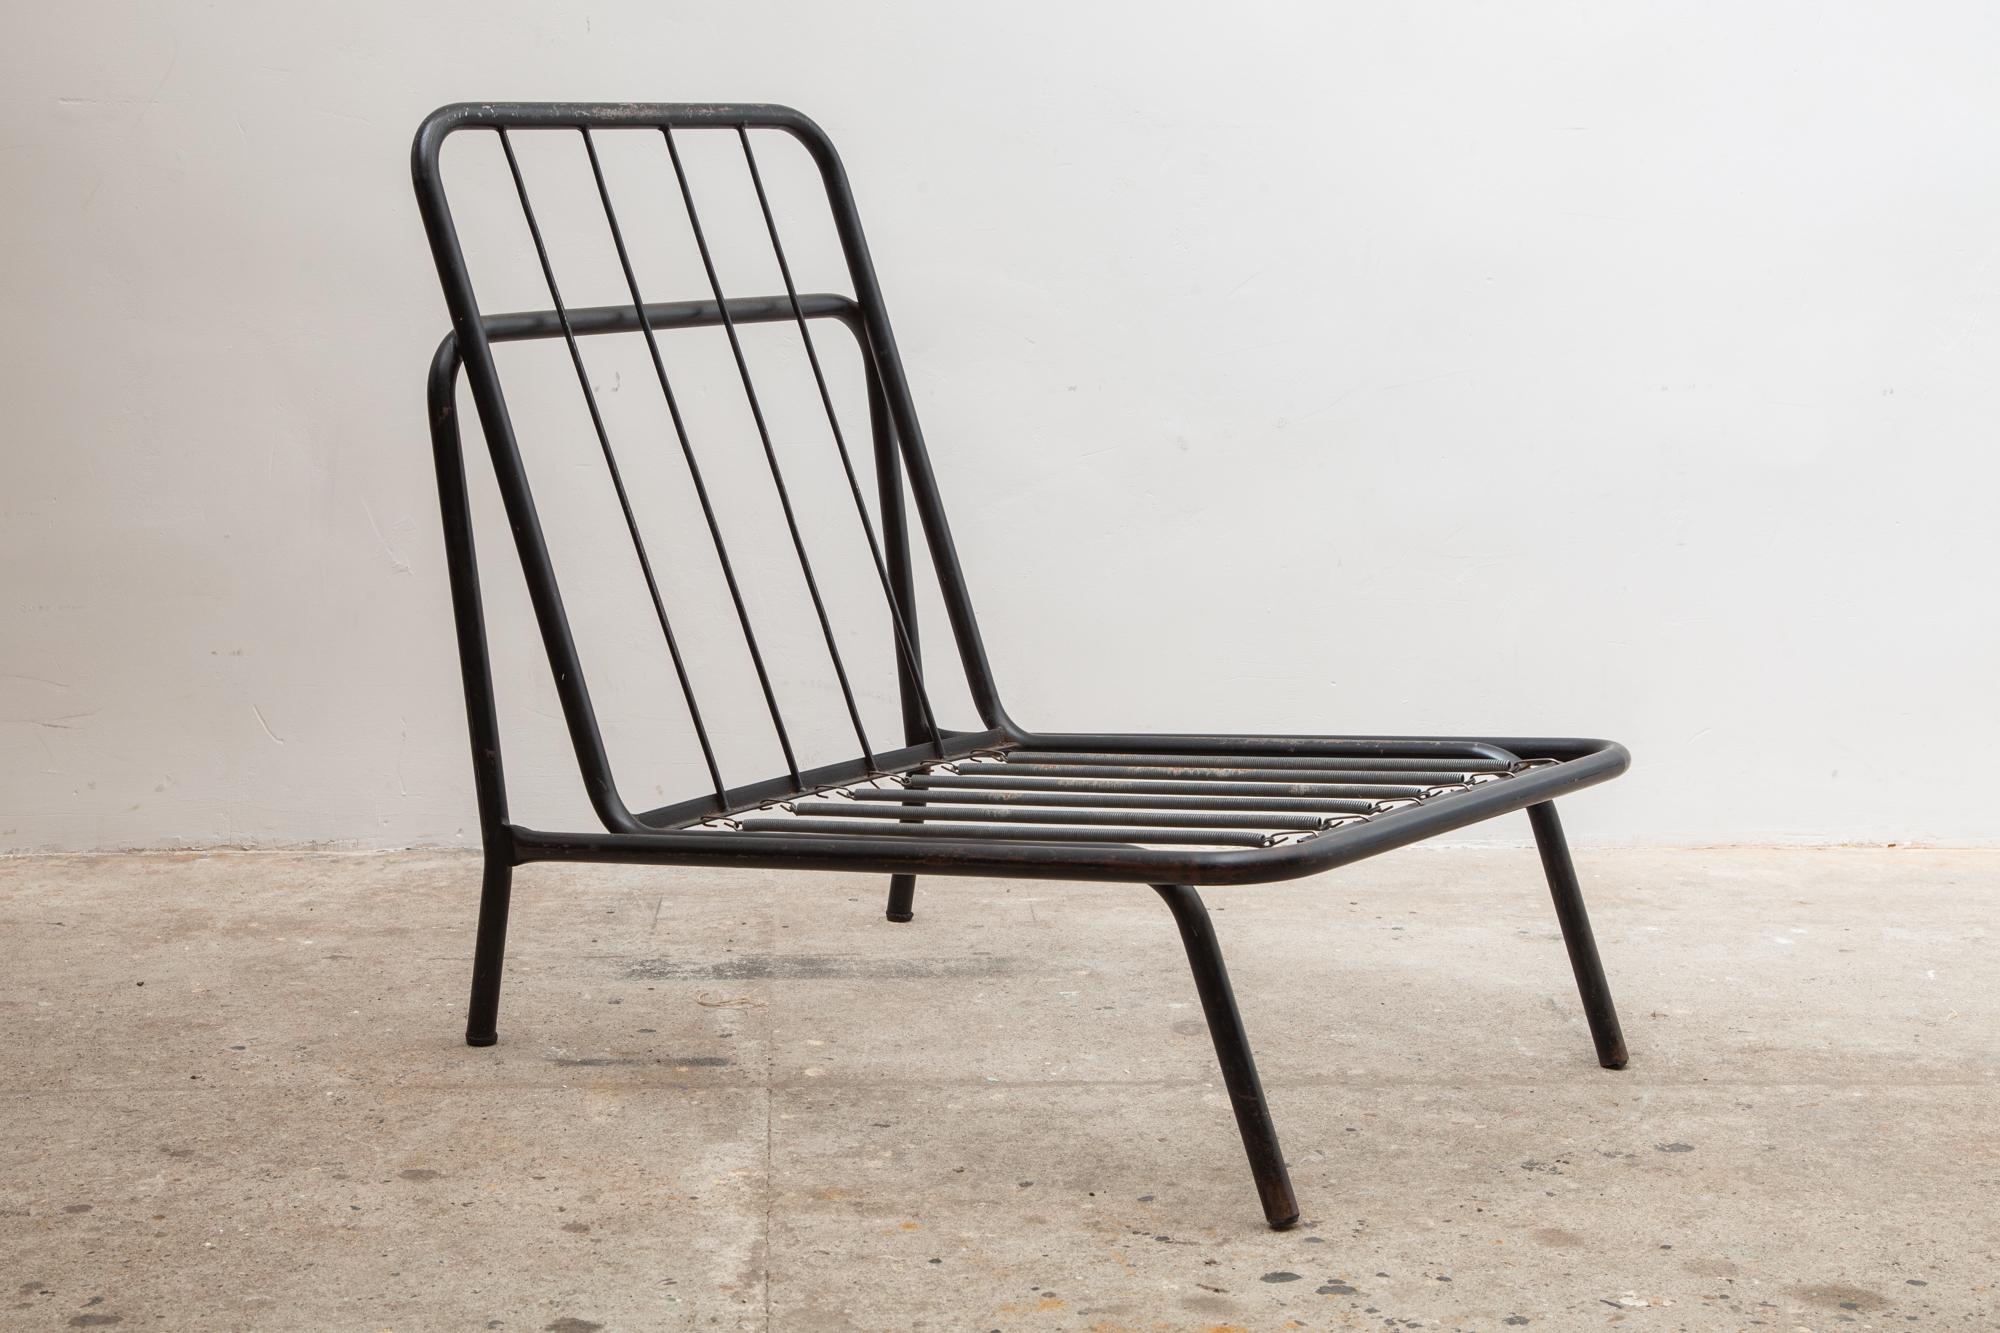 Mid-20th Century Midcentury Patio Chairs, Belgium Design, 1960s